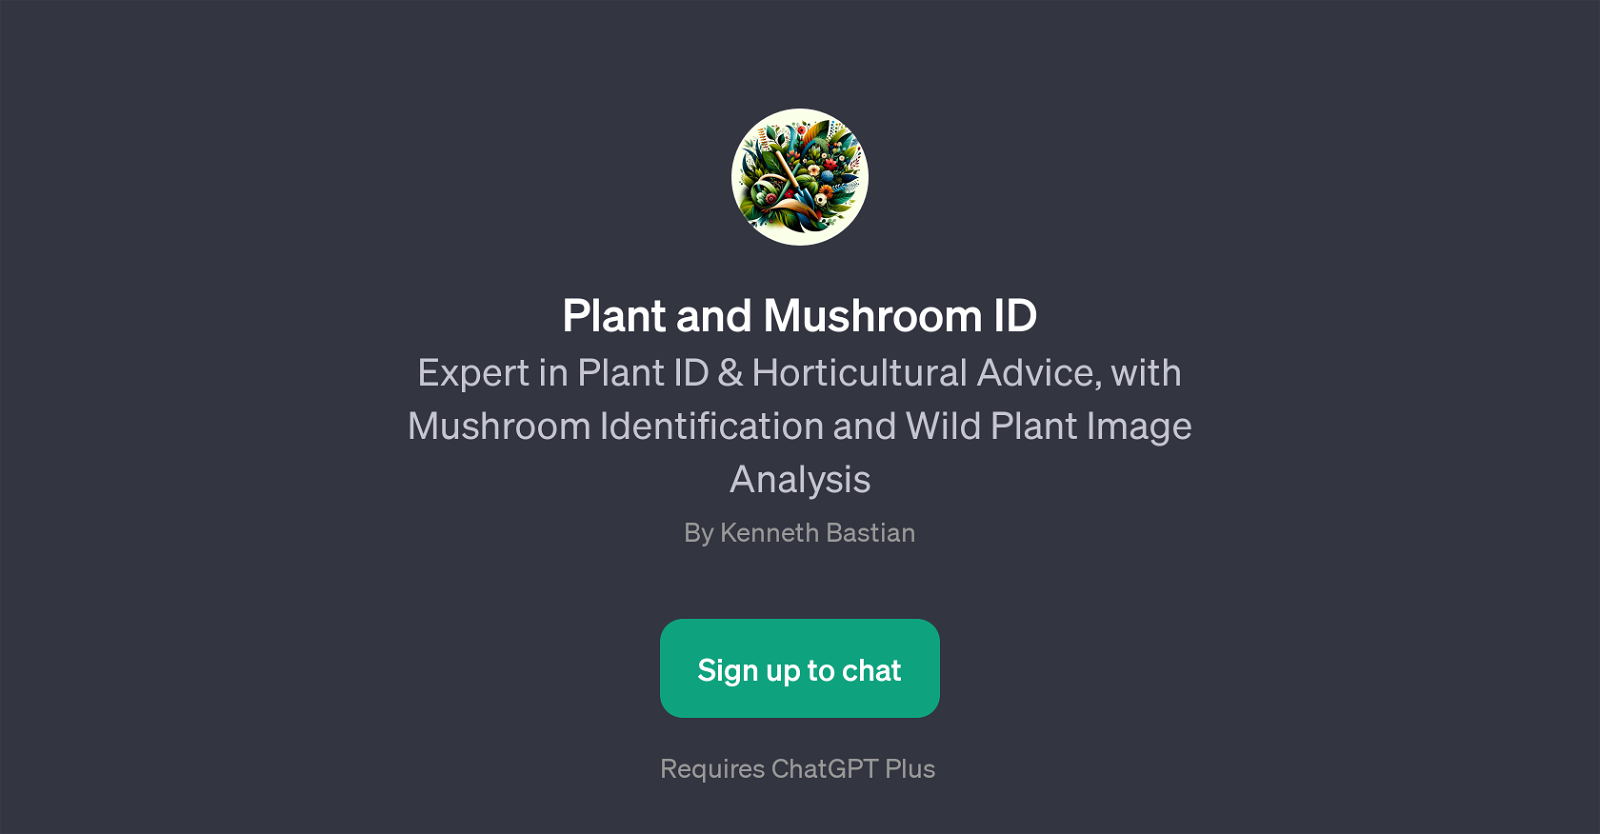 Plant and Mushroom ID website